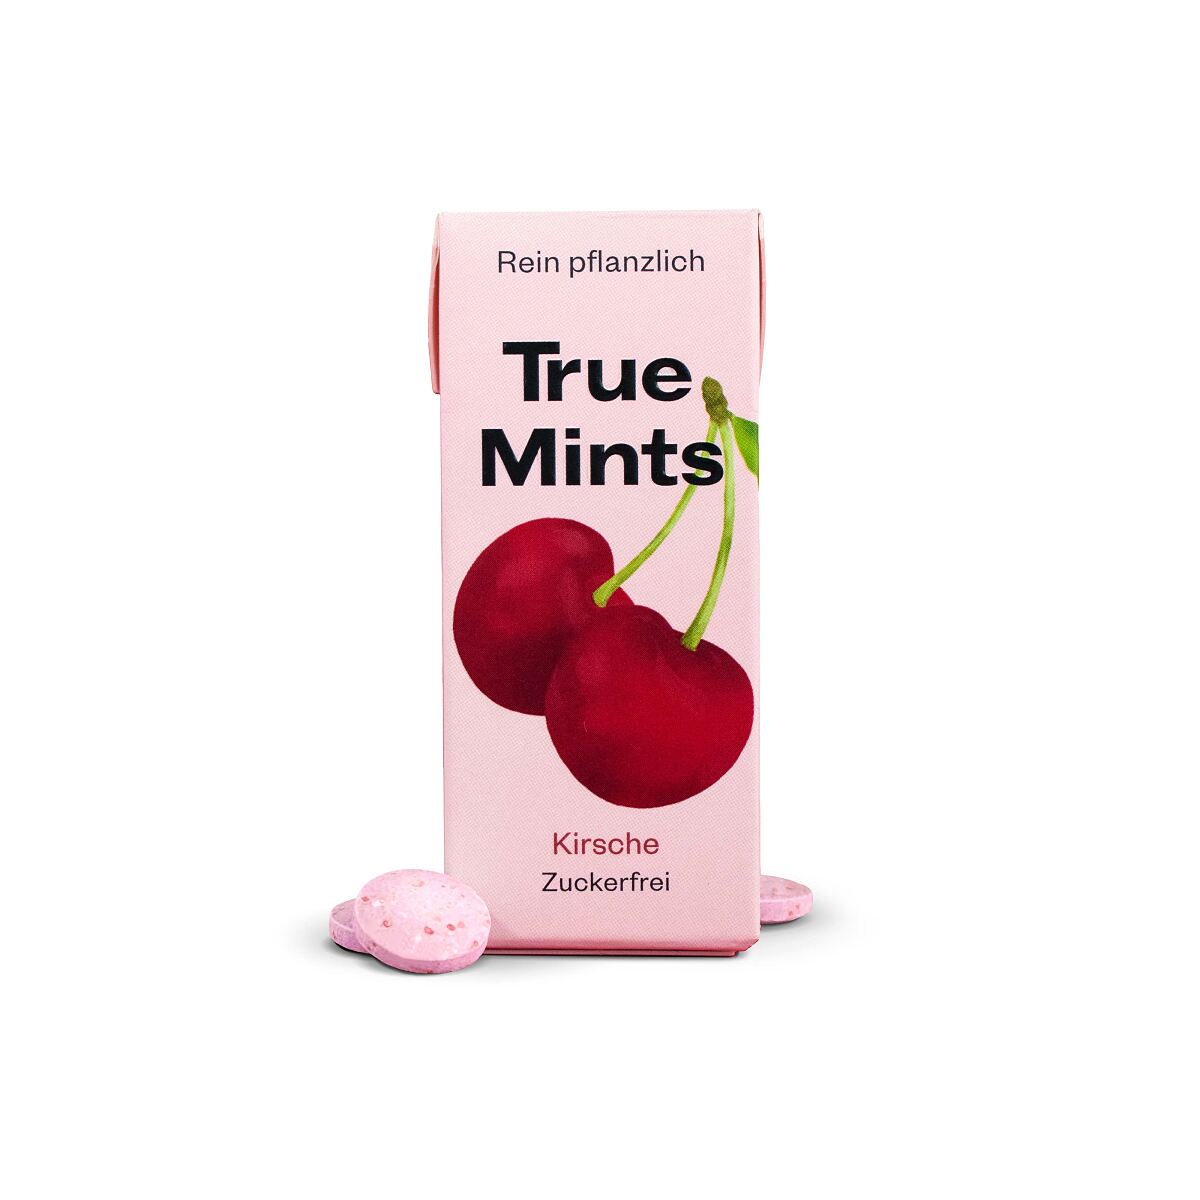 True Mints Cherry_EUR 1,59 low